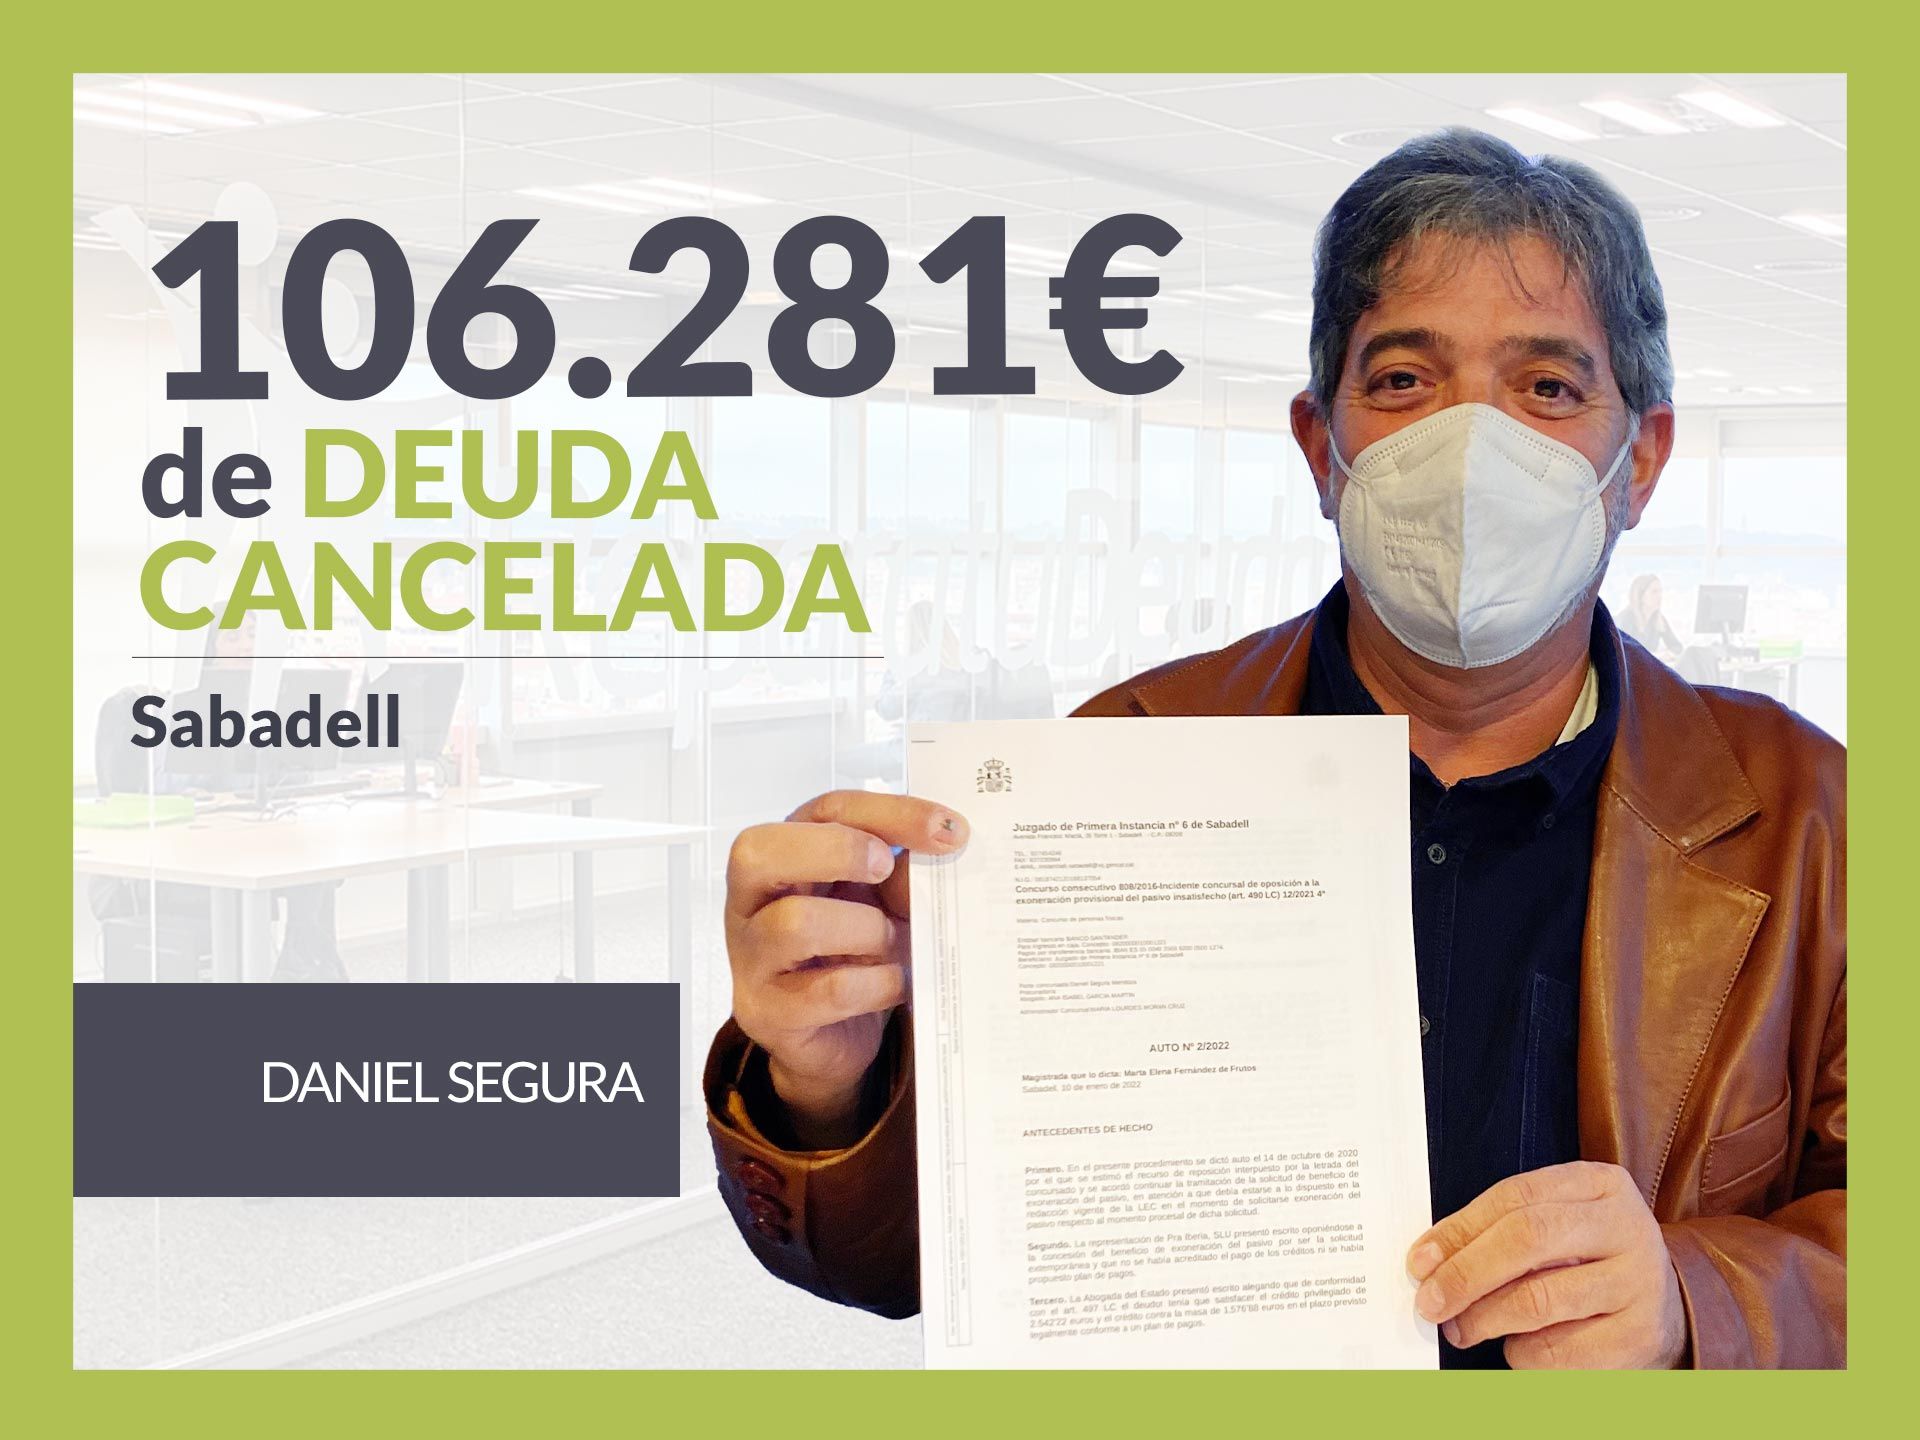 Repara tu Deuda Abogados cancela 106.281? en Sabadell (Barcelona) con la Ley de Segunda Oportunidad